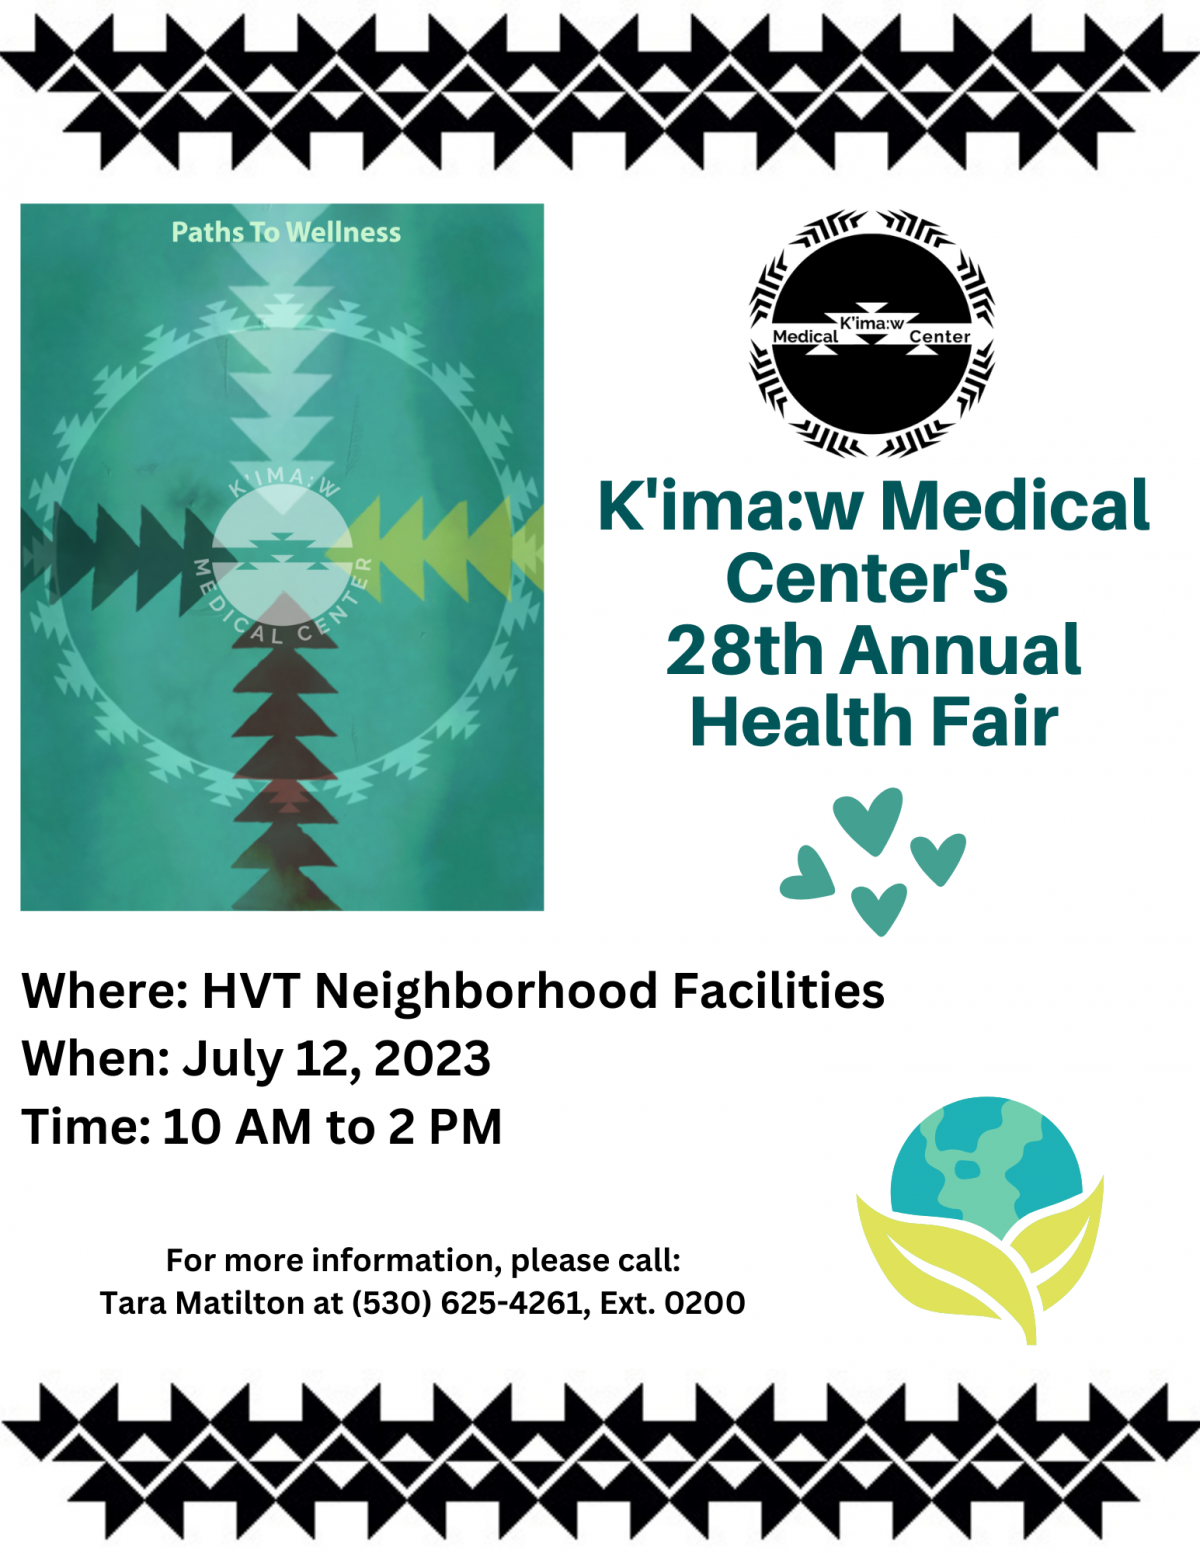 Kimaw Medical Center's 28th Annual Health Fair